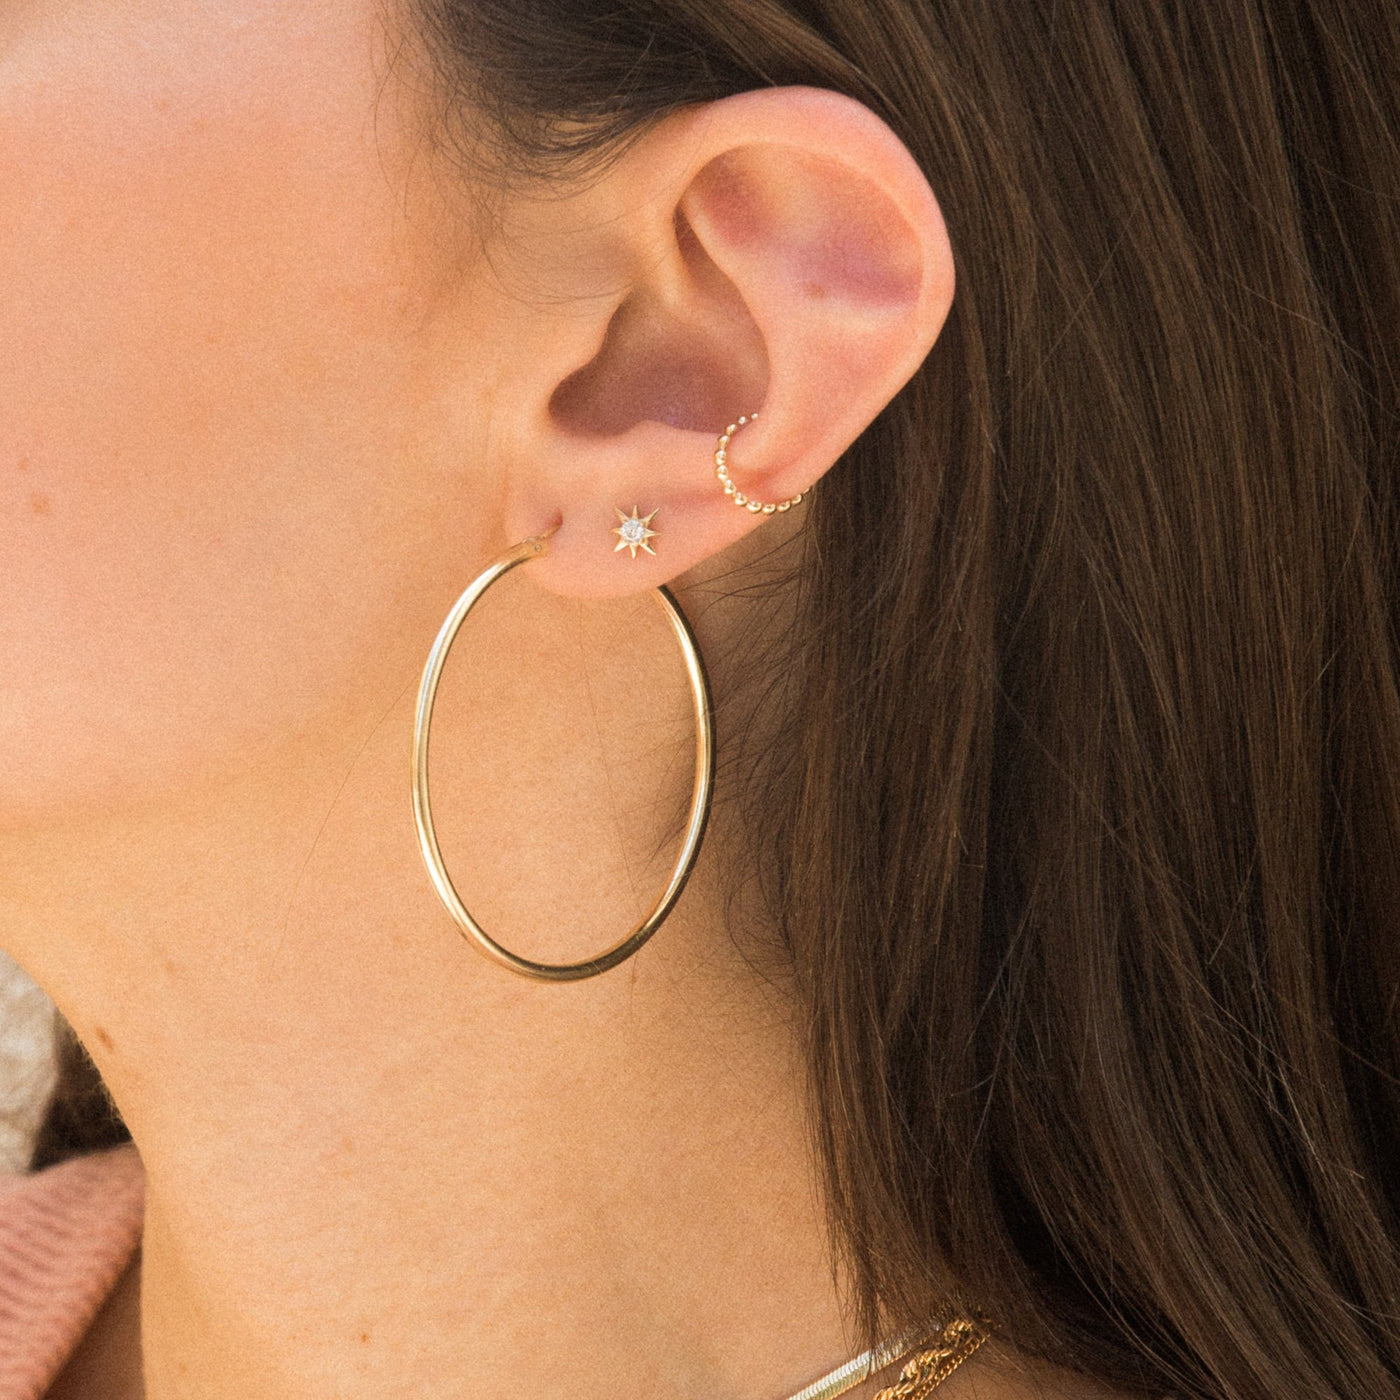 Beaded Ear Cuff by Simple & Dainty Jewelry